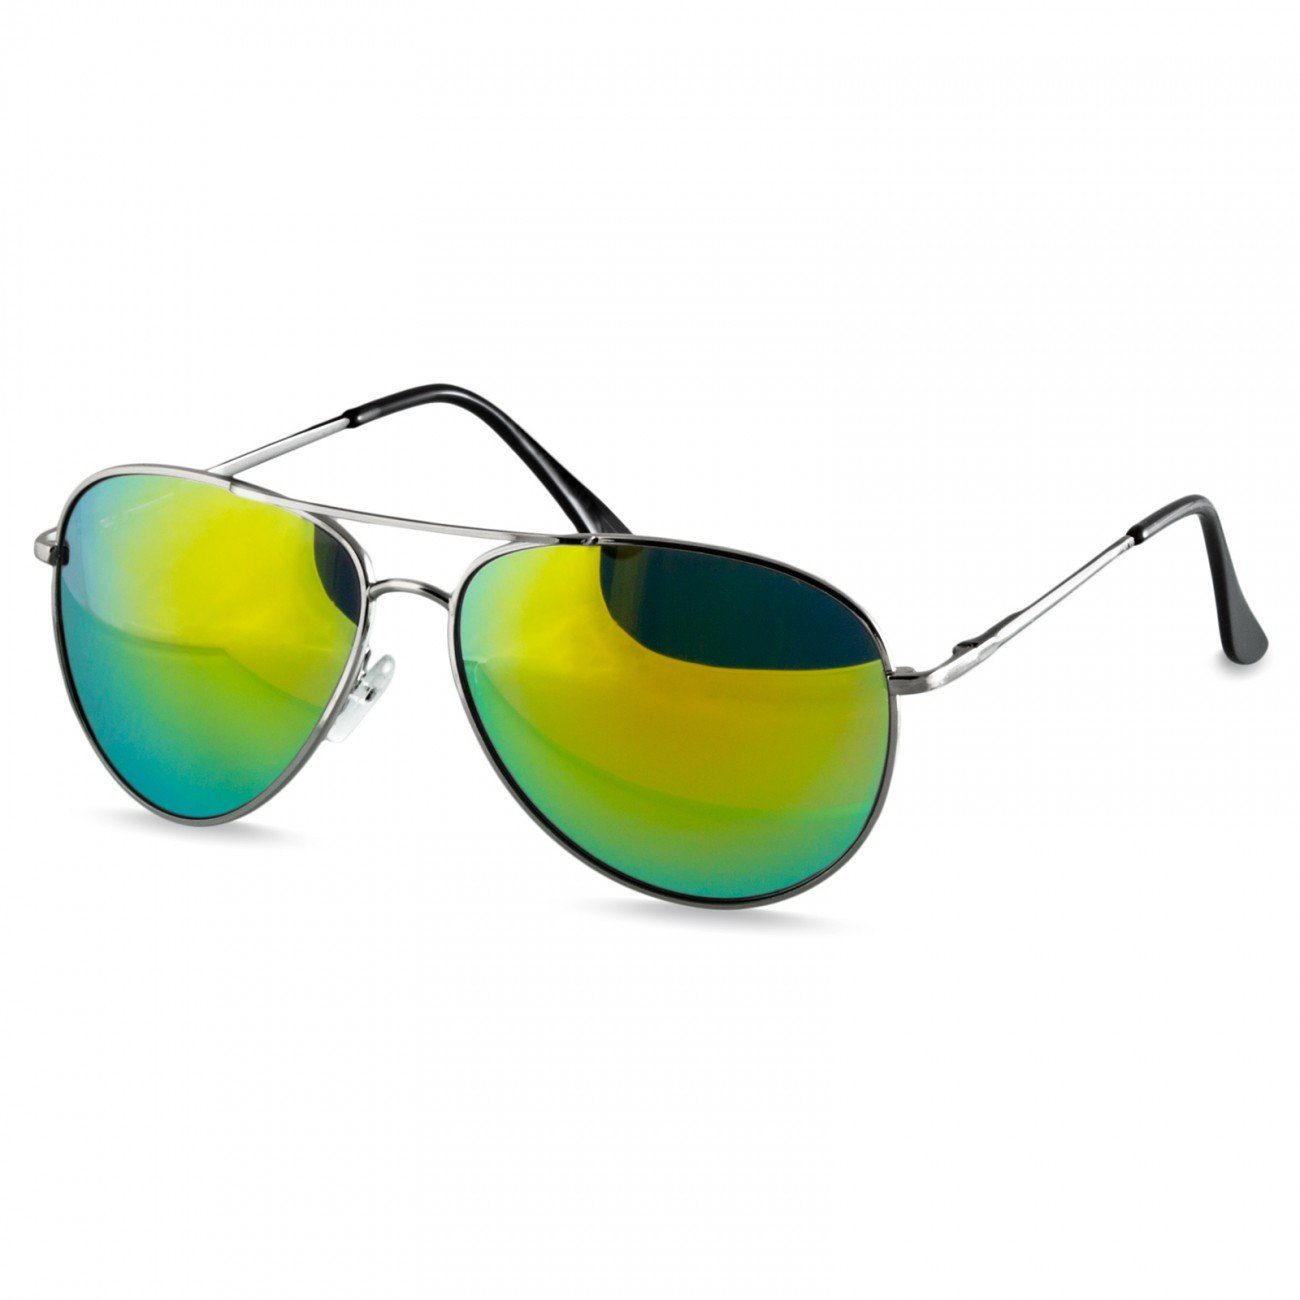 Caspar Sonnenbrille SG013 klassische Unisex Retro Pilotenbrille silber / grün gold verspiegelt | Sonnenbrillen